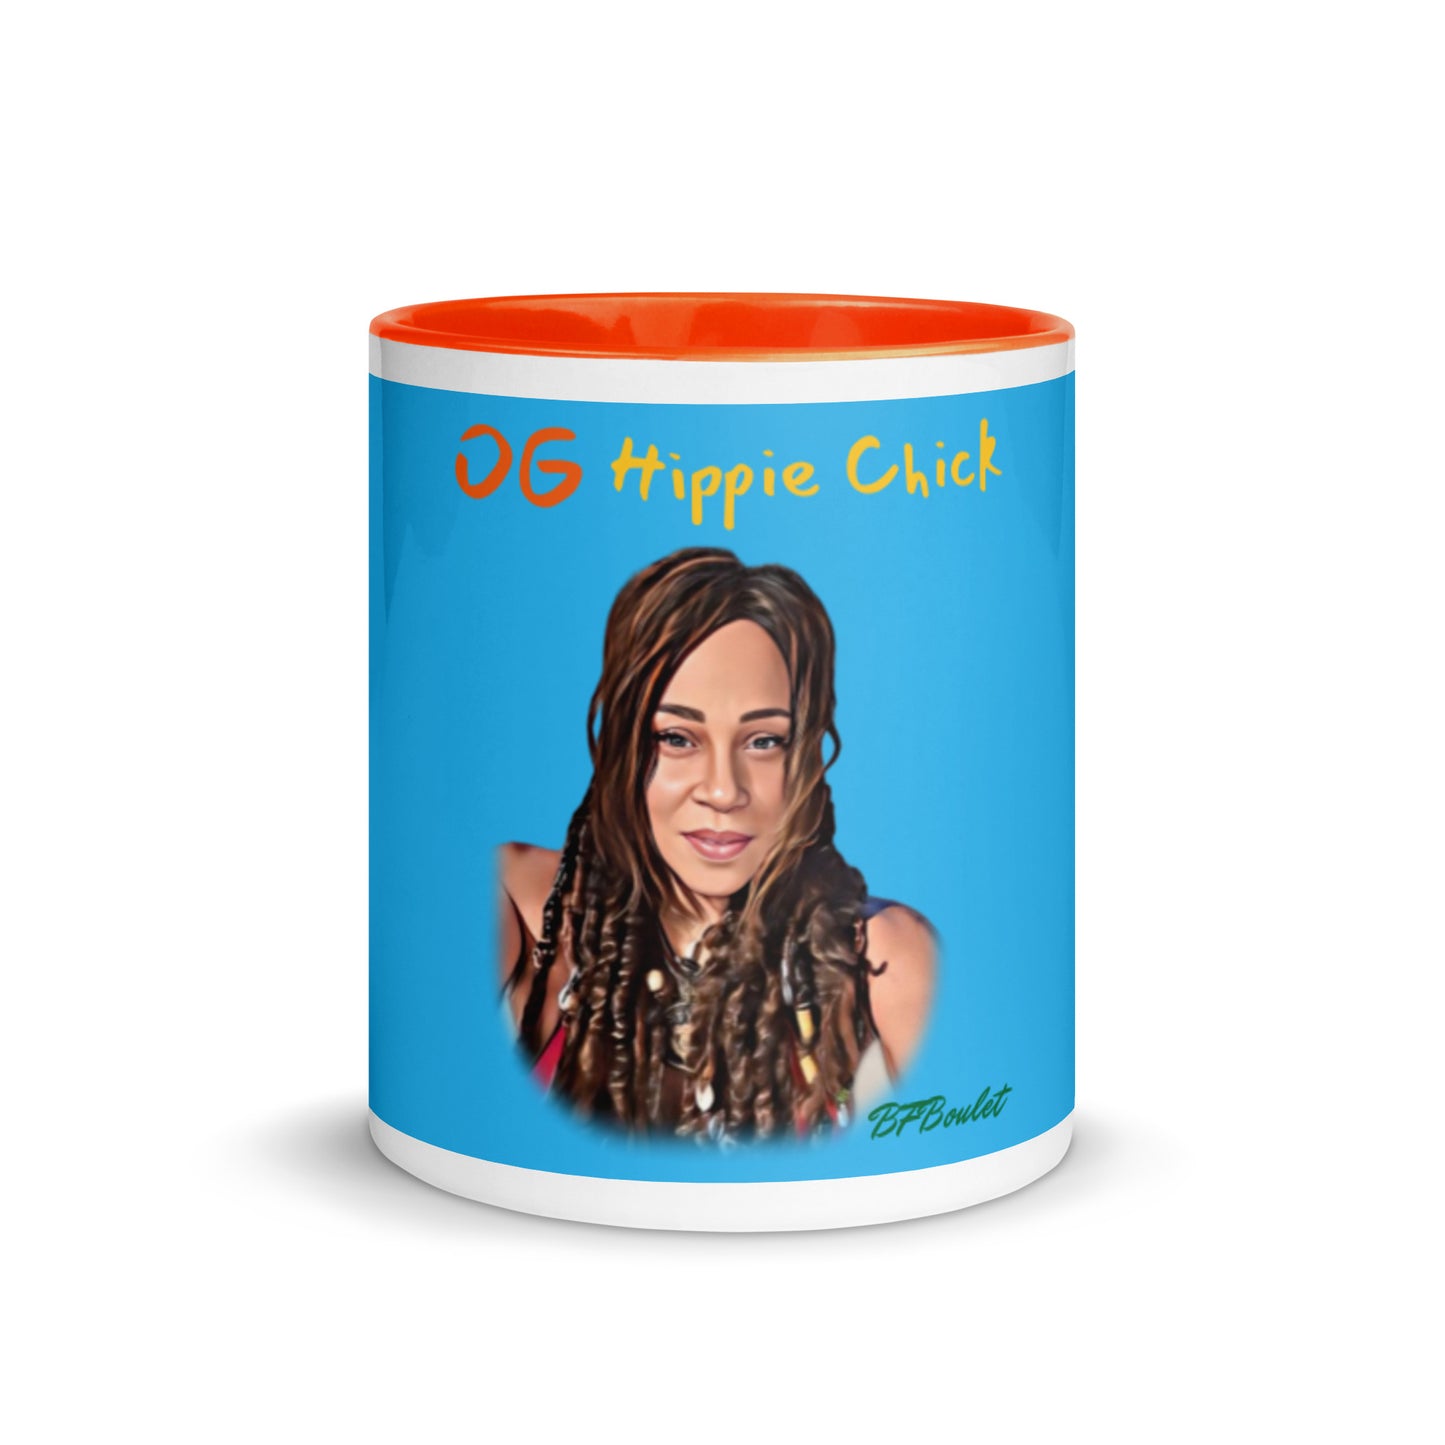 Sky Blue Color Mug - OG Hippie Chick (BFBoulet)